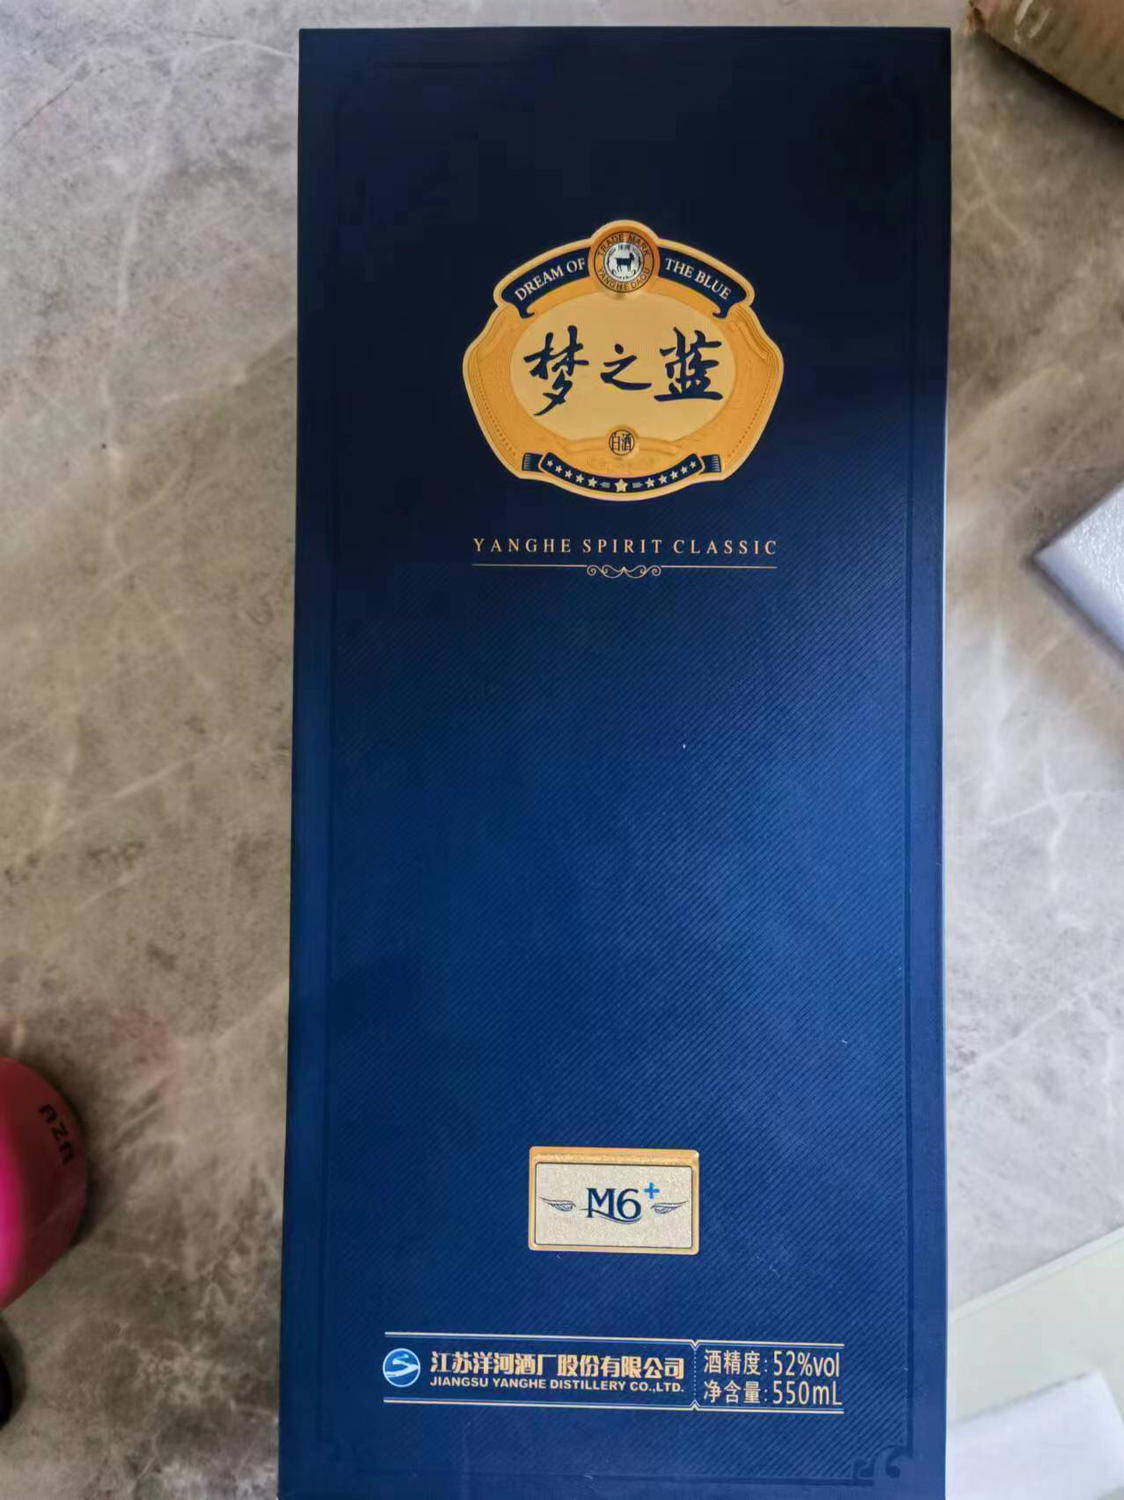 洋河梦之蓝M6+ 蓝色经典 绵柔白酒浓香型 52度 550mL晒单图